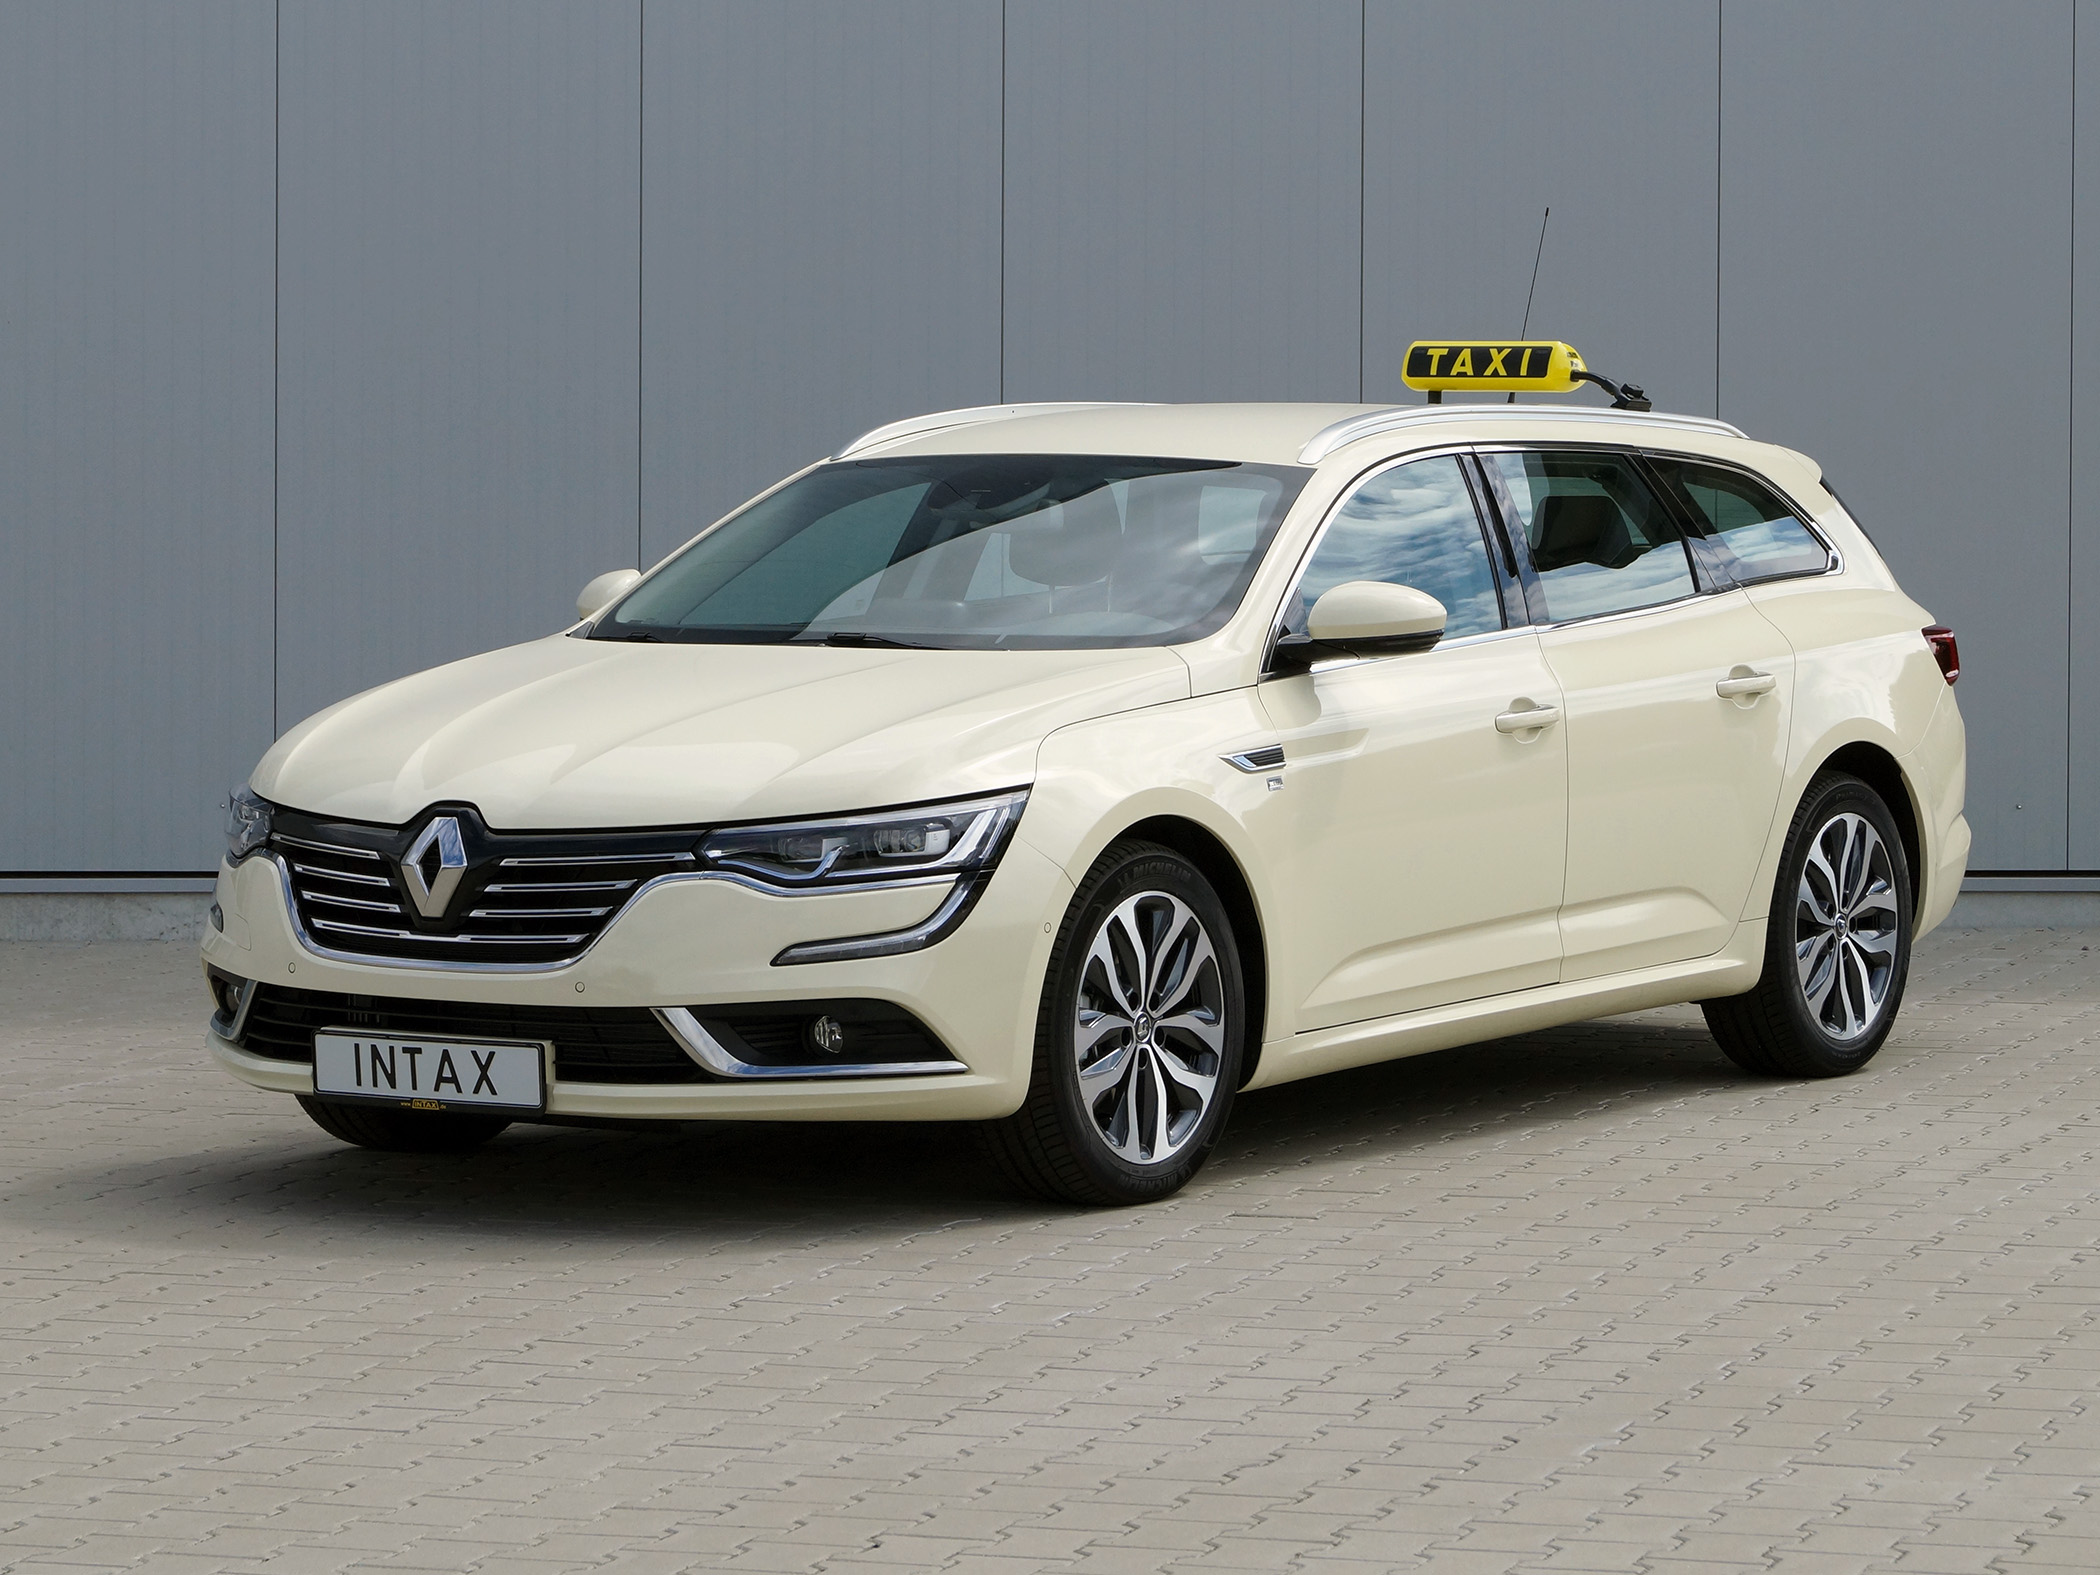 Featured image for “Neuer Renault Talisman mit Taxipaket von INTAX”